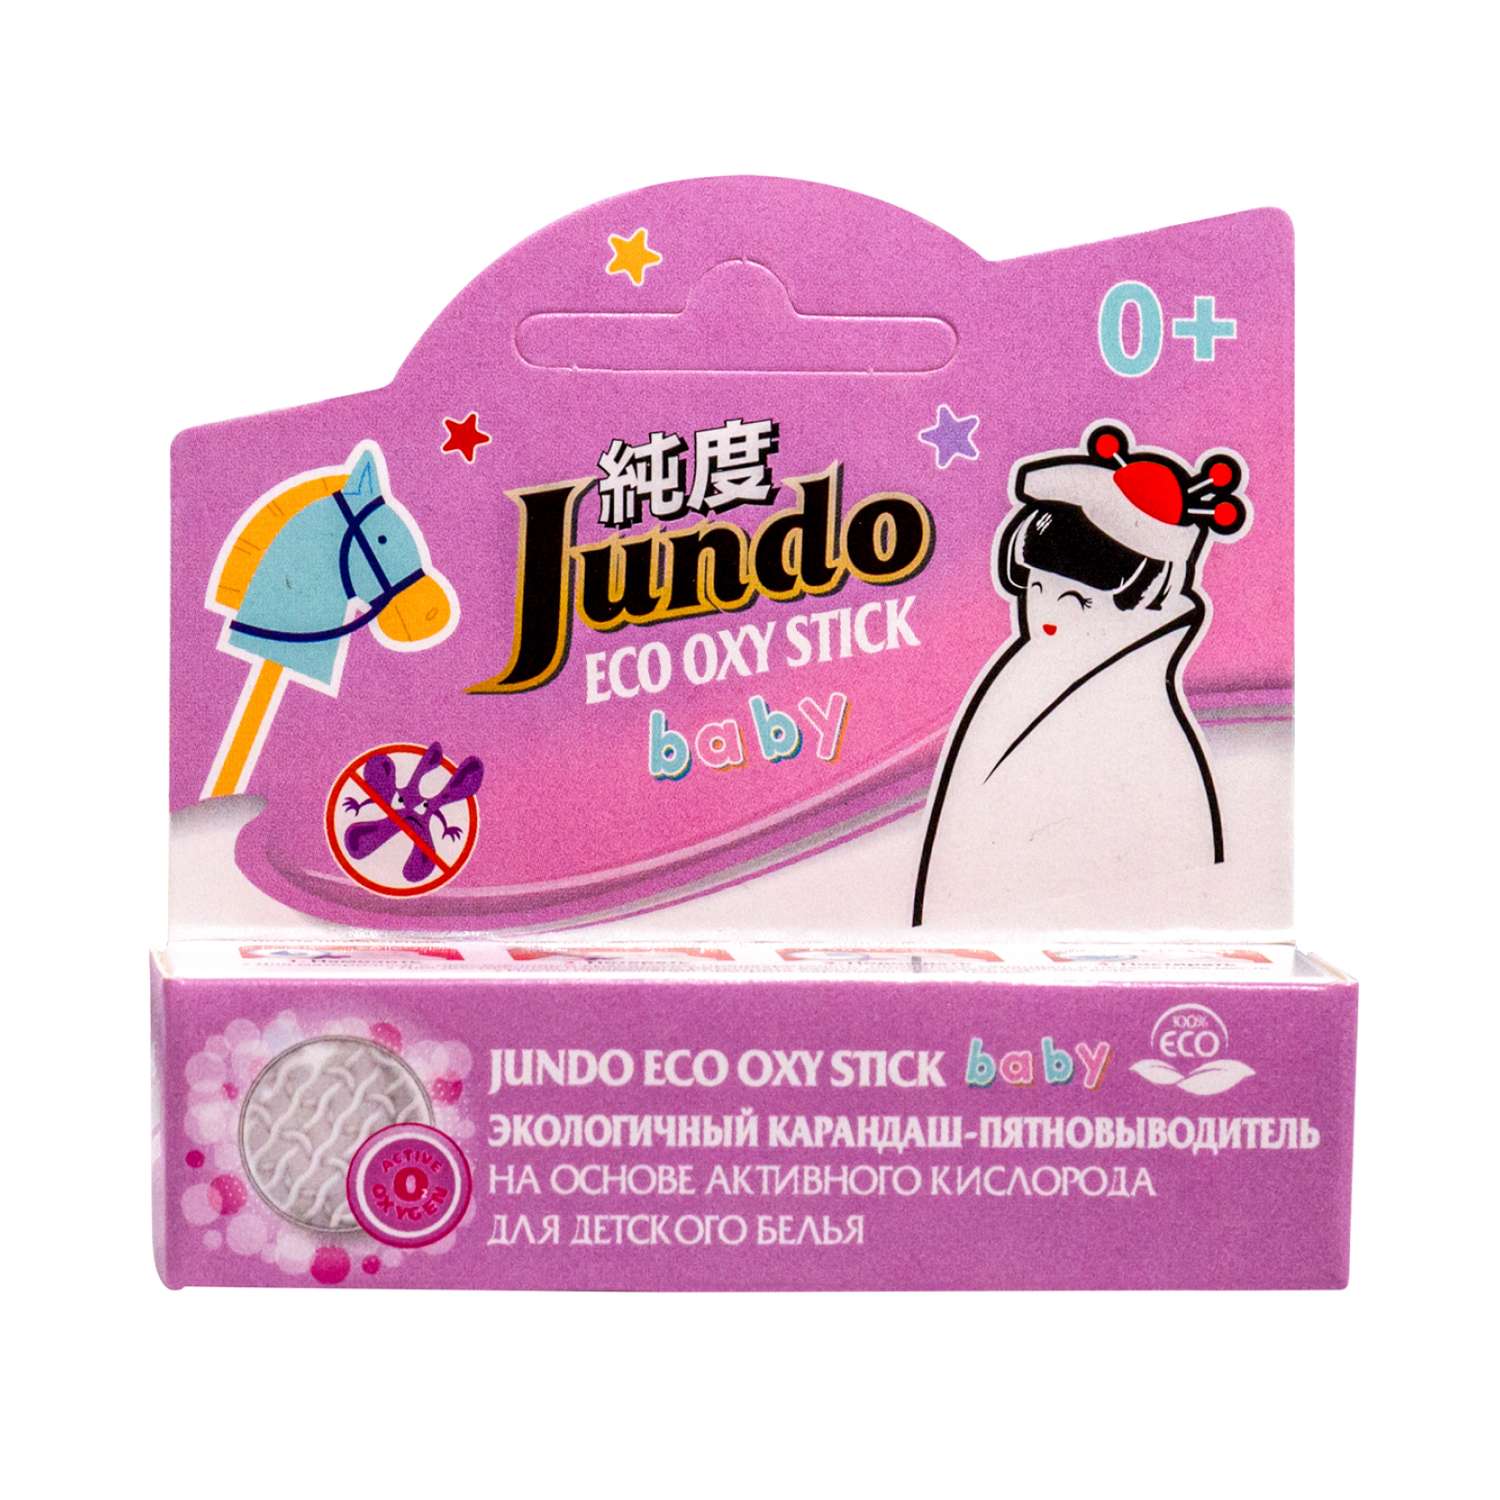 Карандаш-пятновыводитель Jundo для детского белья 35 г ECO OXY stick BABY кислородный экологичный - фото 7